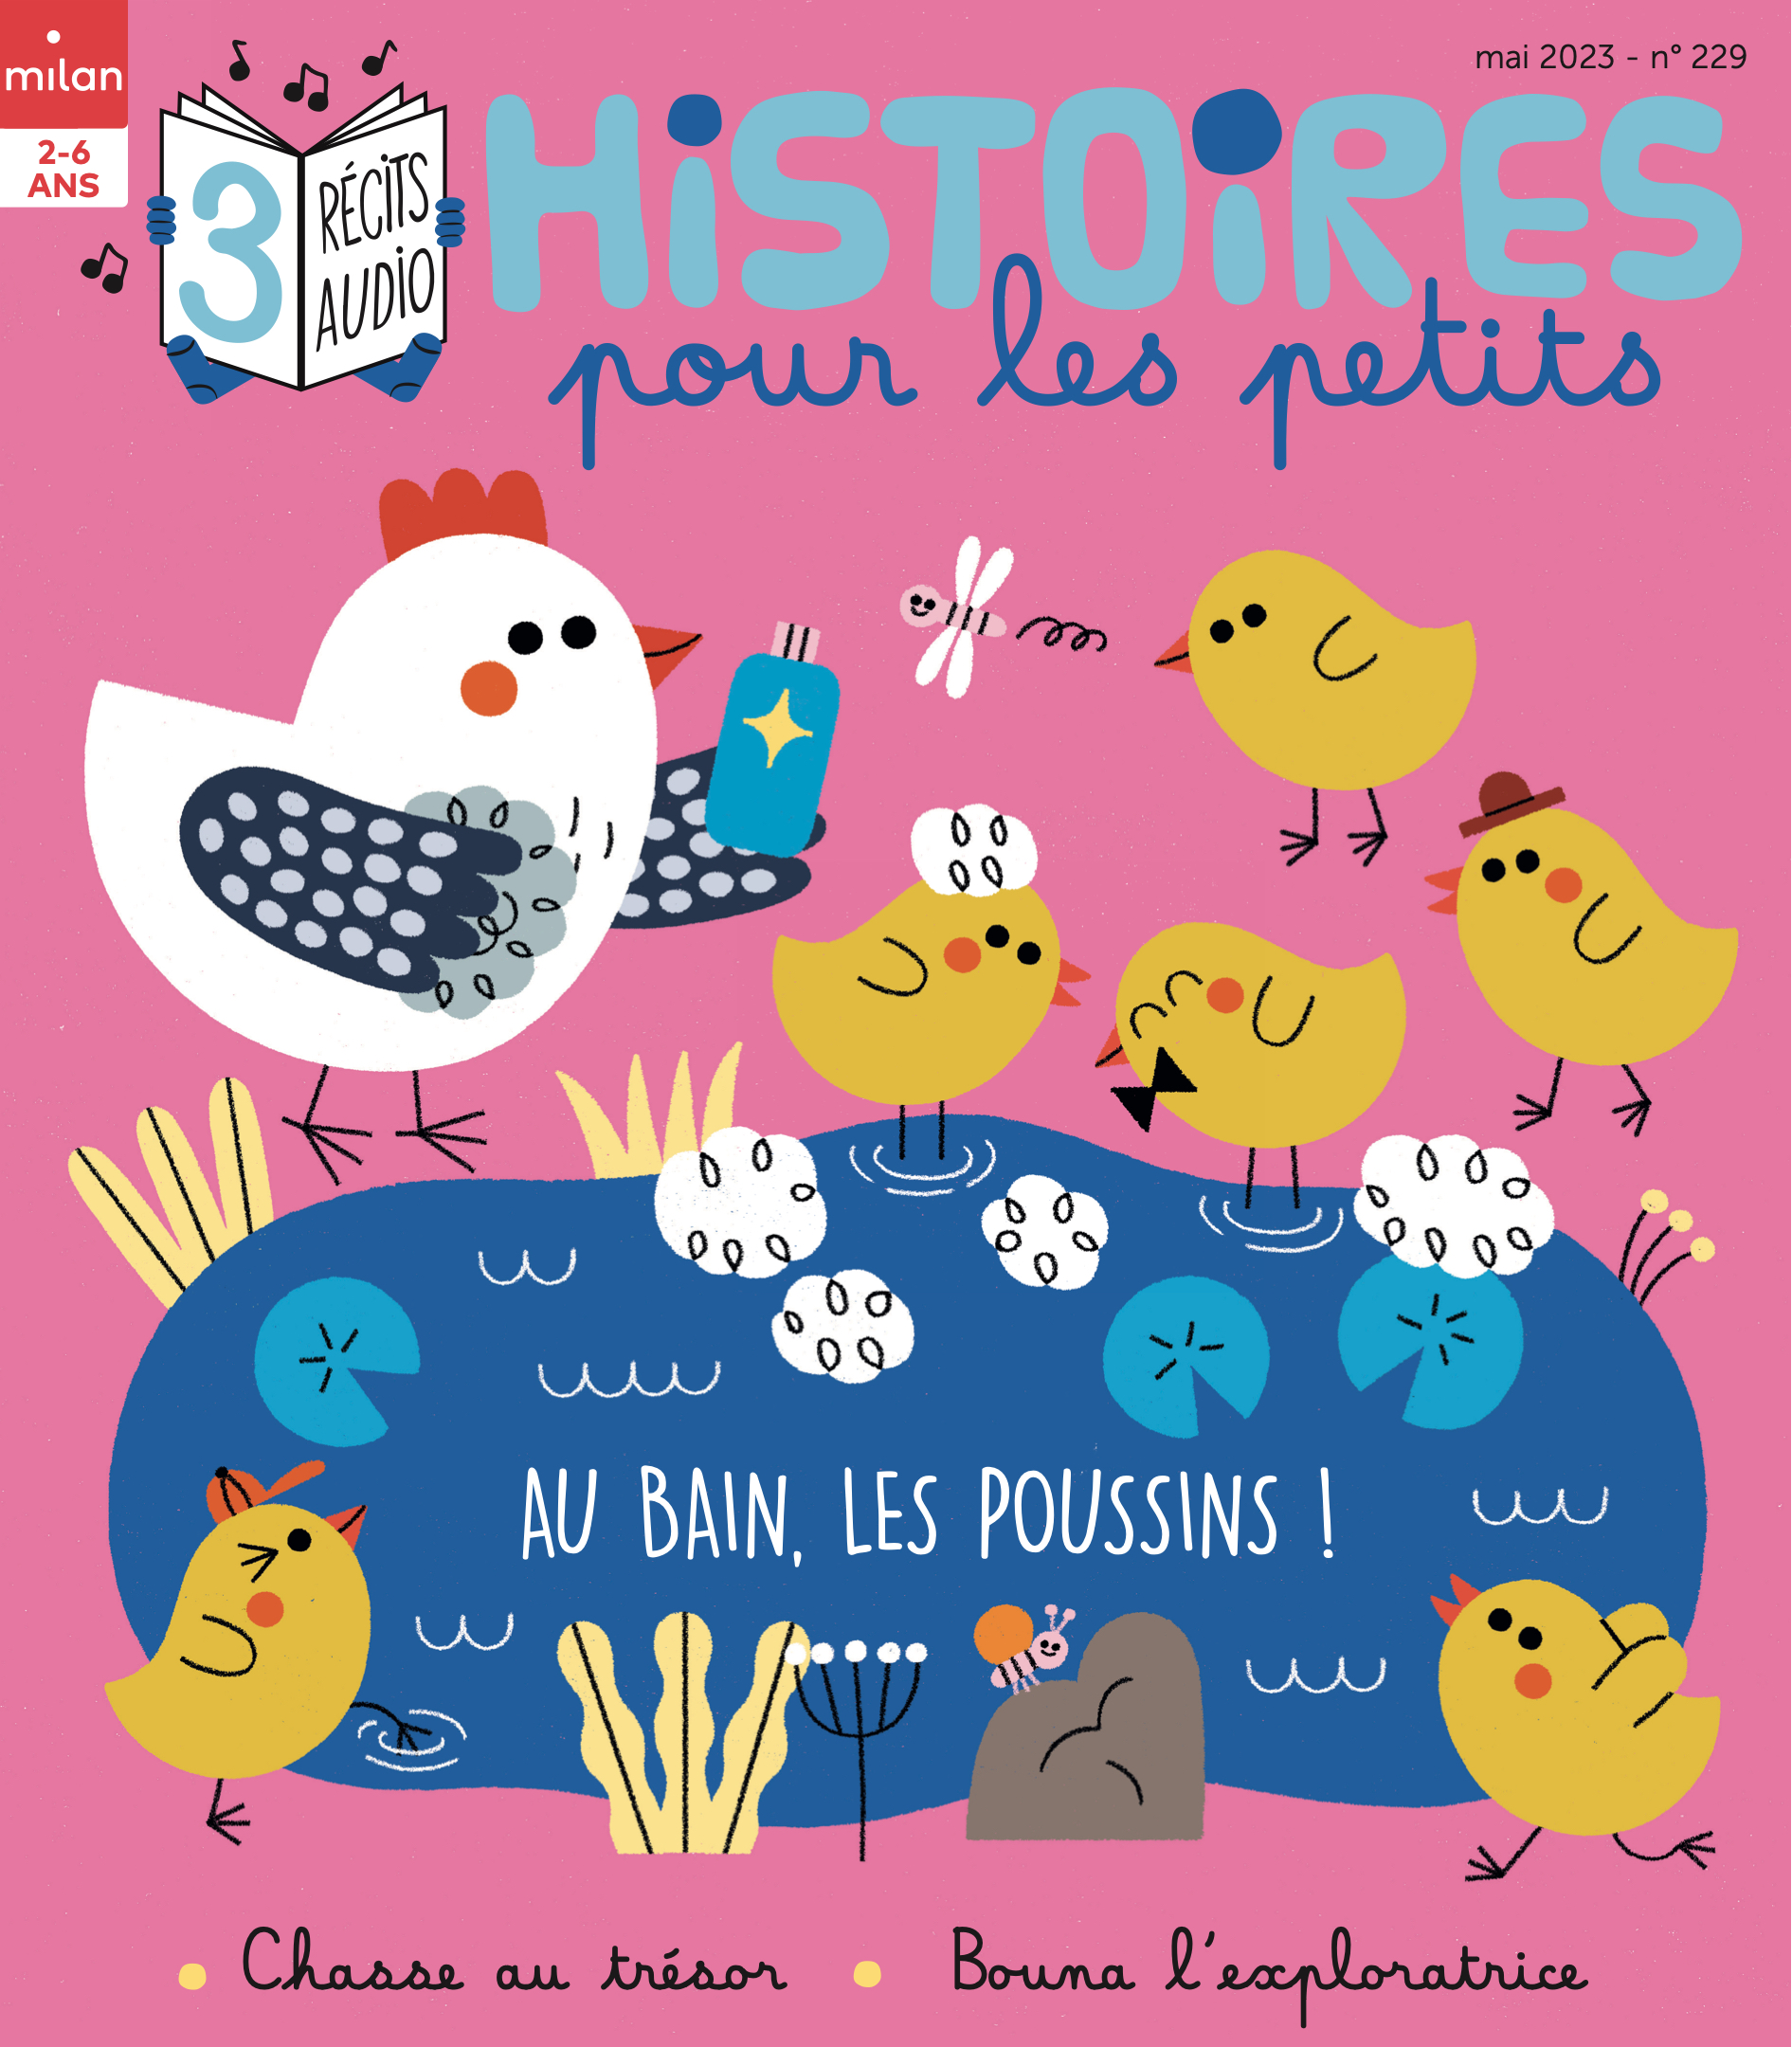 Livre - Mon Histoire Du Soir ; Héros Et Aventures ; 30 Histoires